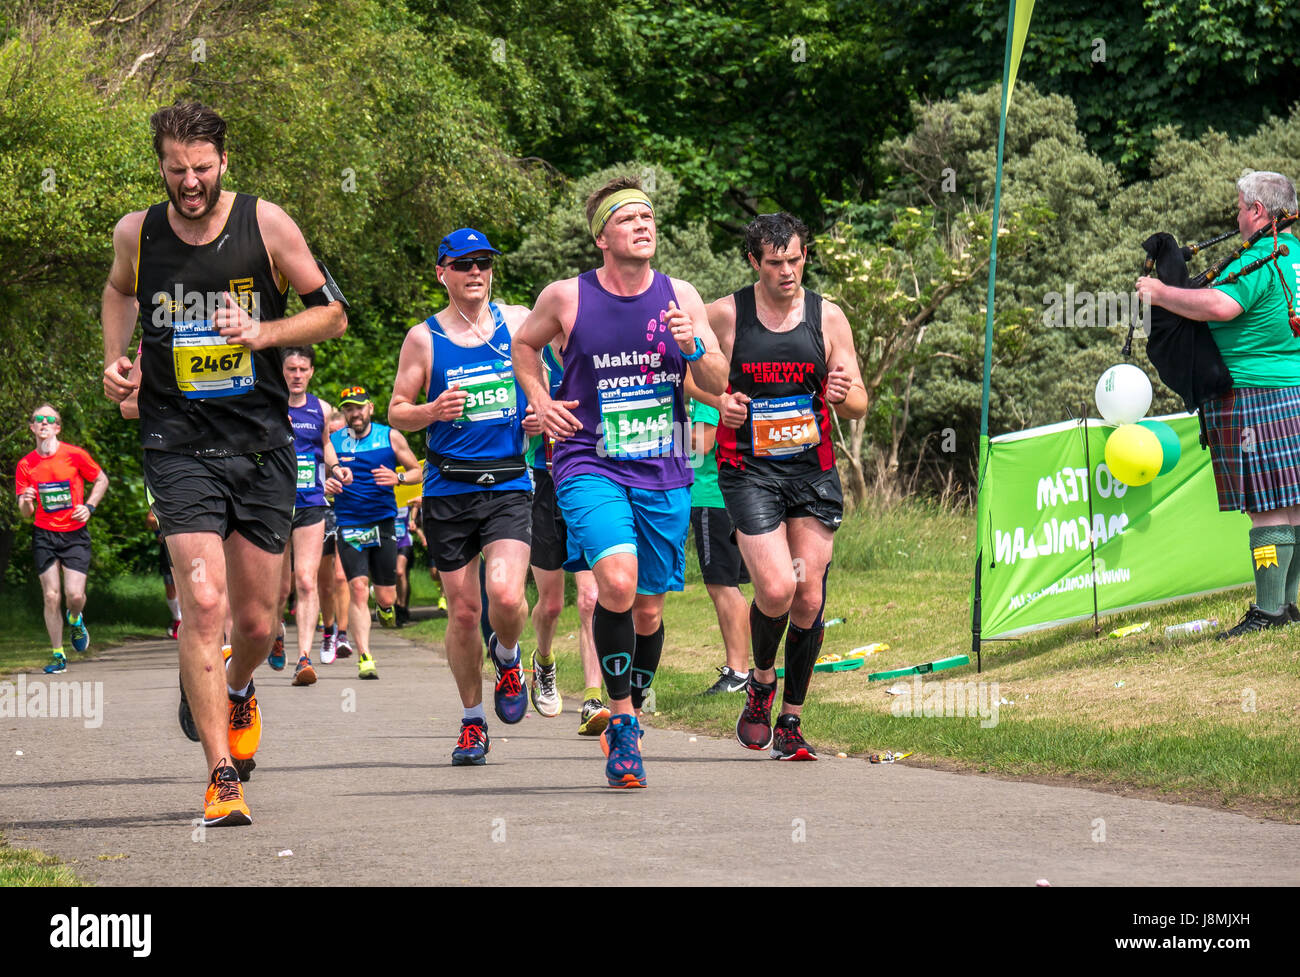 Corridori della maratona maschile nel Festival della maratona di Edimburgo 2017 a Gosford Estate, East Lothian, Scozia, Regno Unito Foto Stock